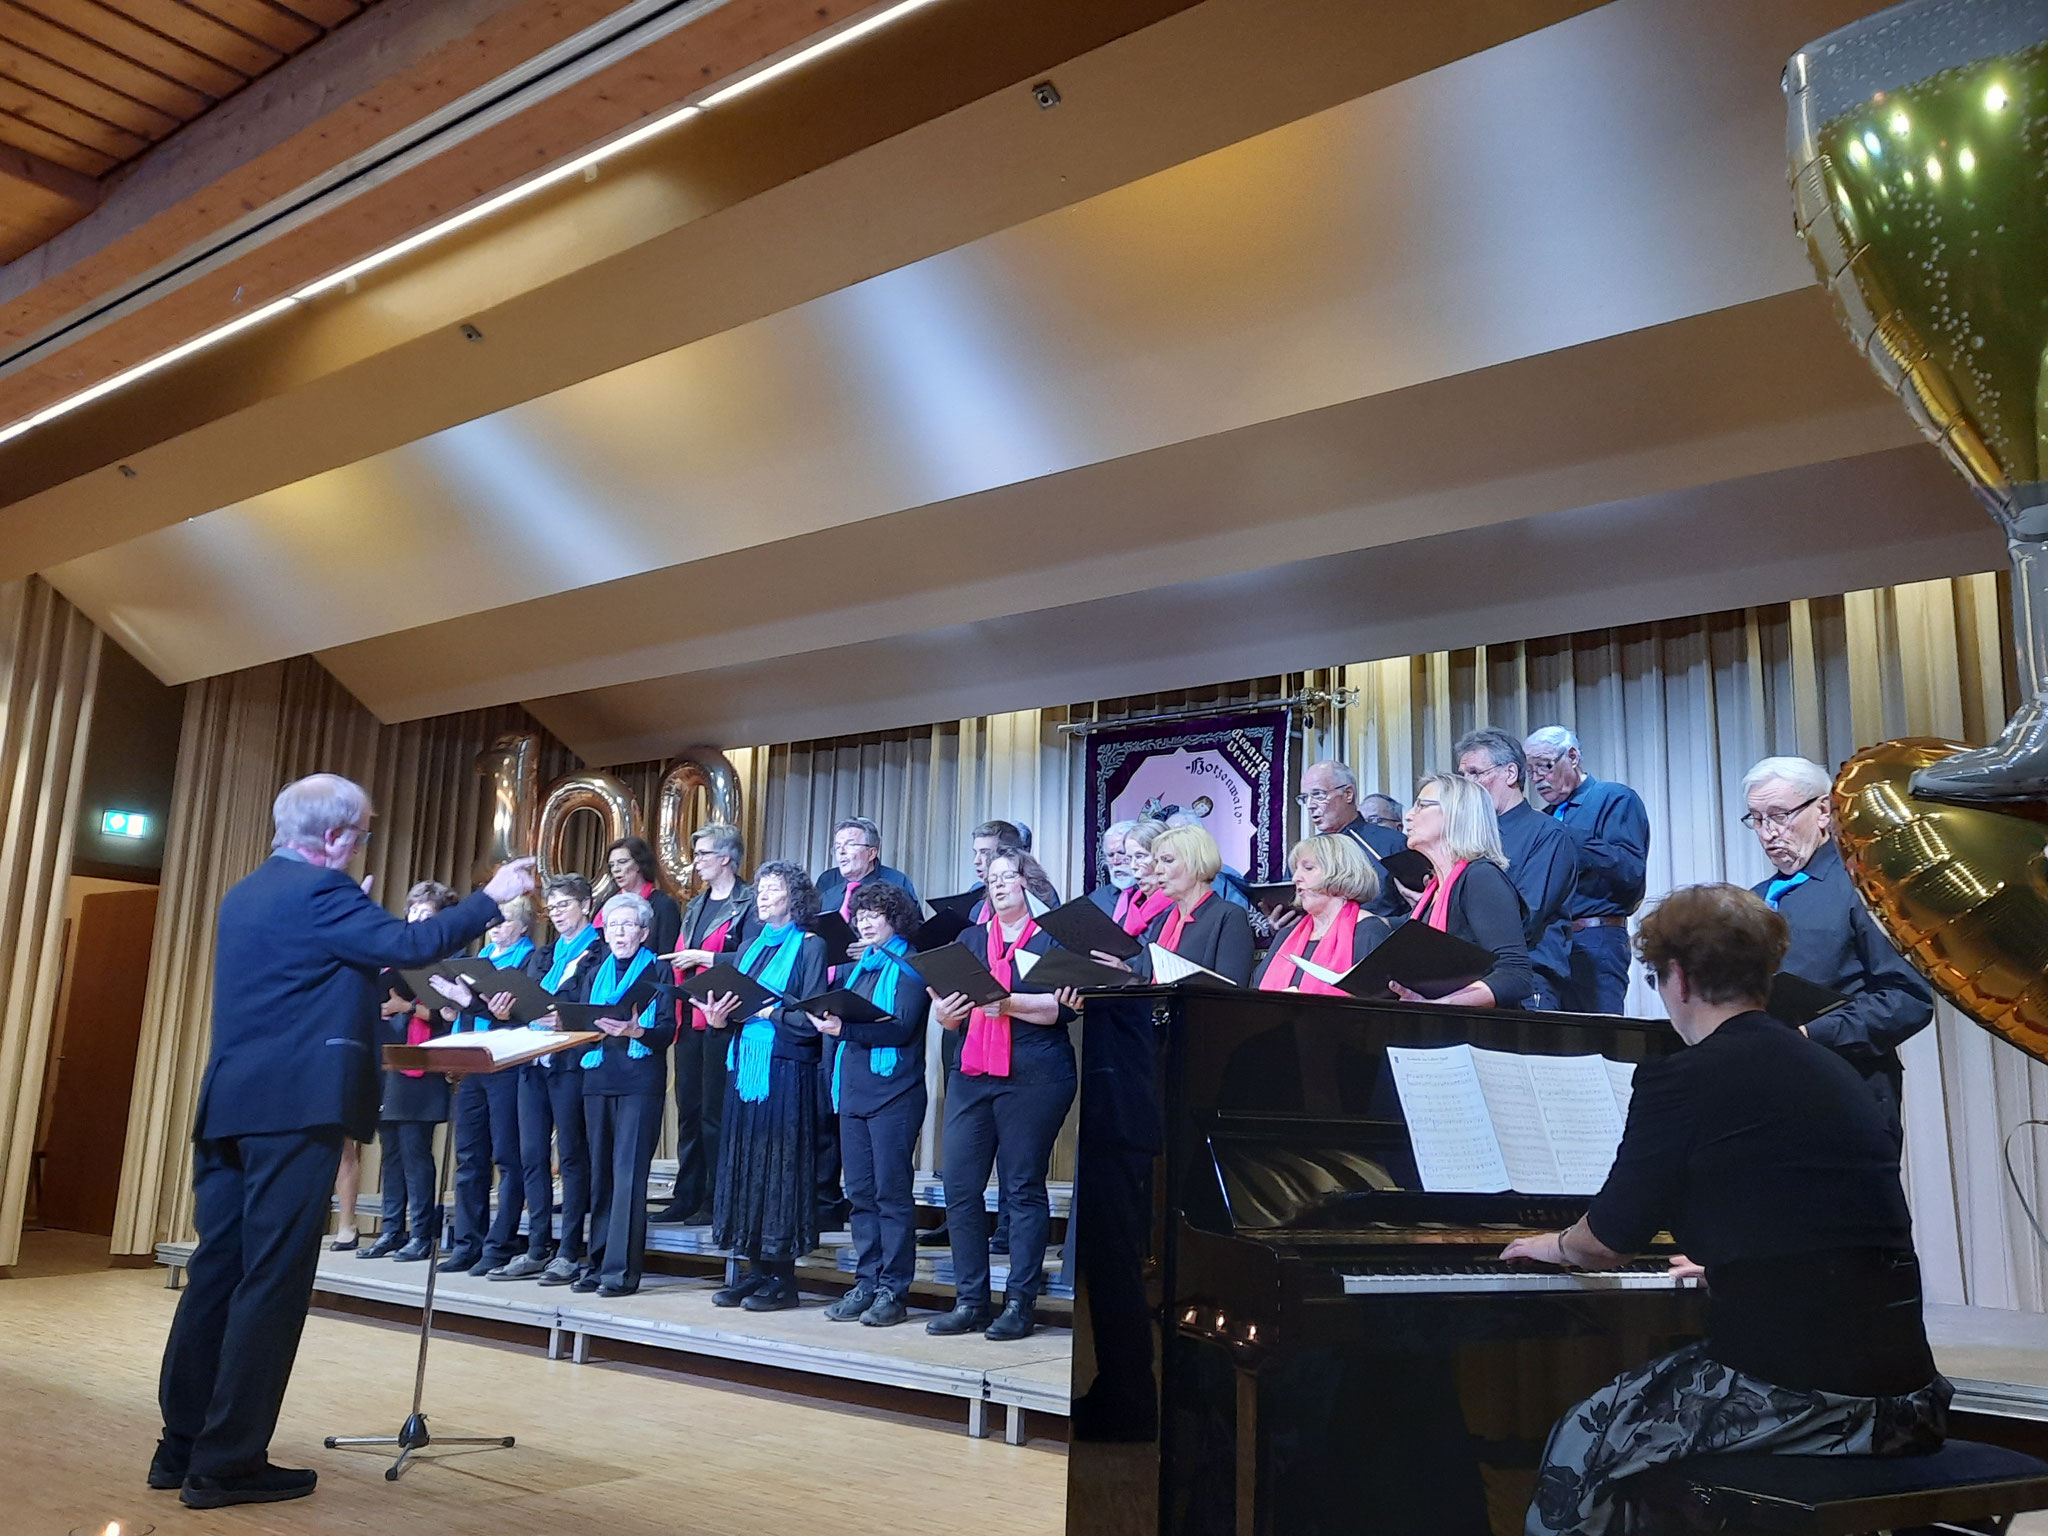 Der Gesamtchor des Gesangvereins Hotzenwald Rickenbach sang schwungvoll „Halleluja, sind ein Lied“ und die Zugabe „So macht das Leben Spaß“ unter Leitung von Martin Angell.